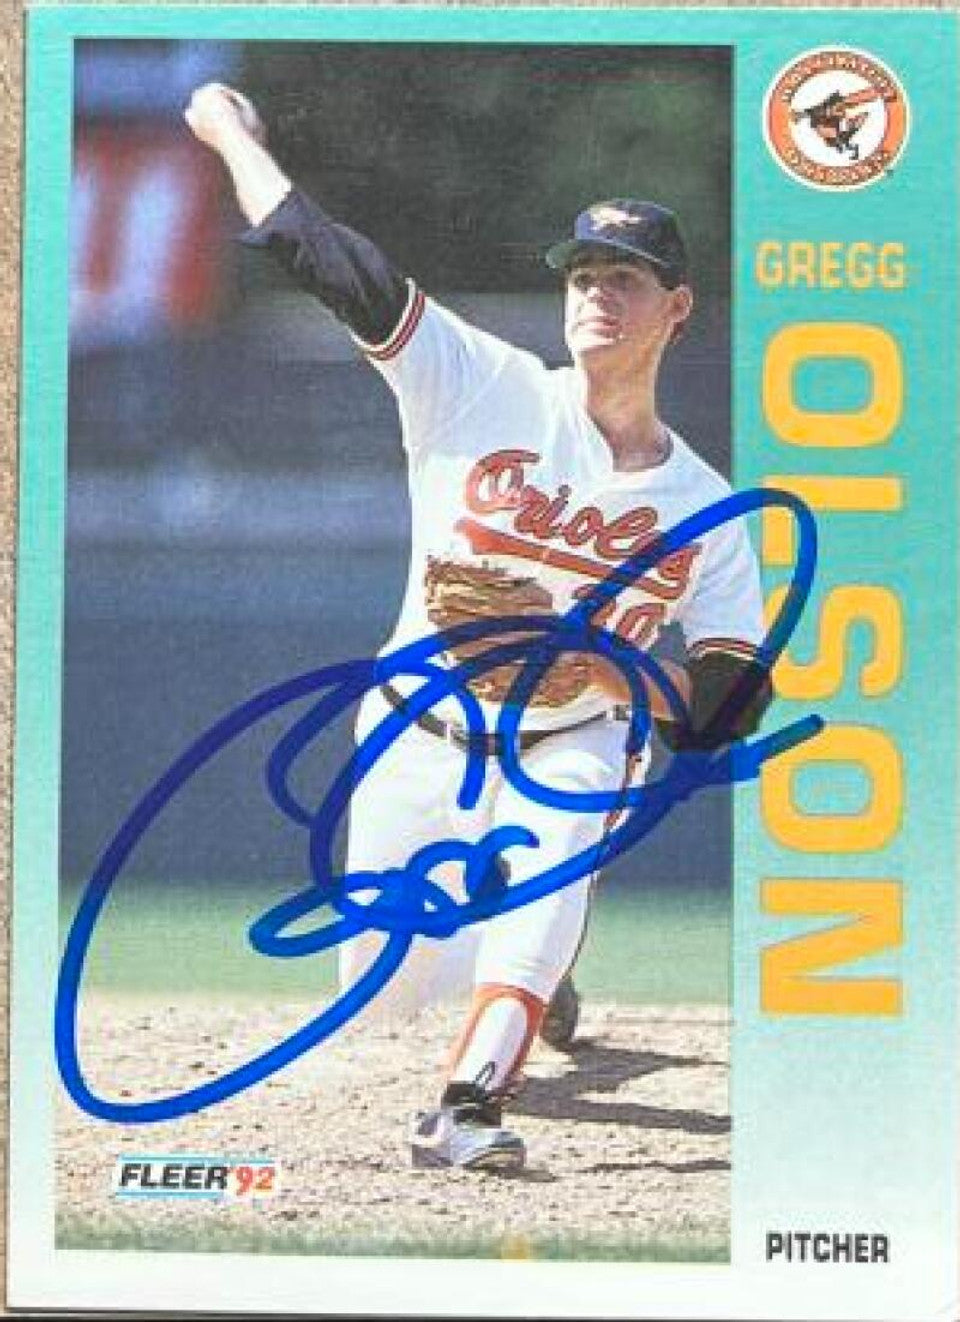 Gregg Olson Signed 1992 Fleer Baseball Card - Baltimore Orioles #21